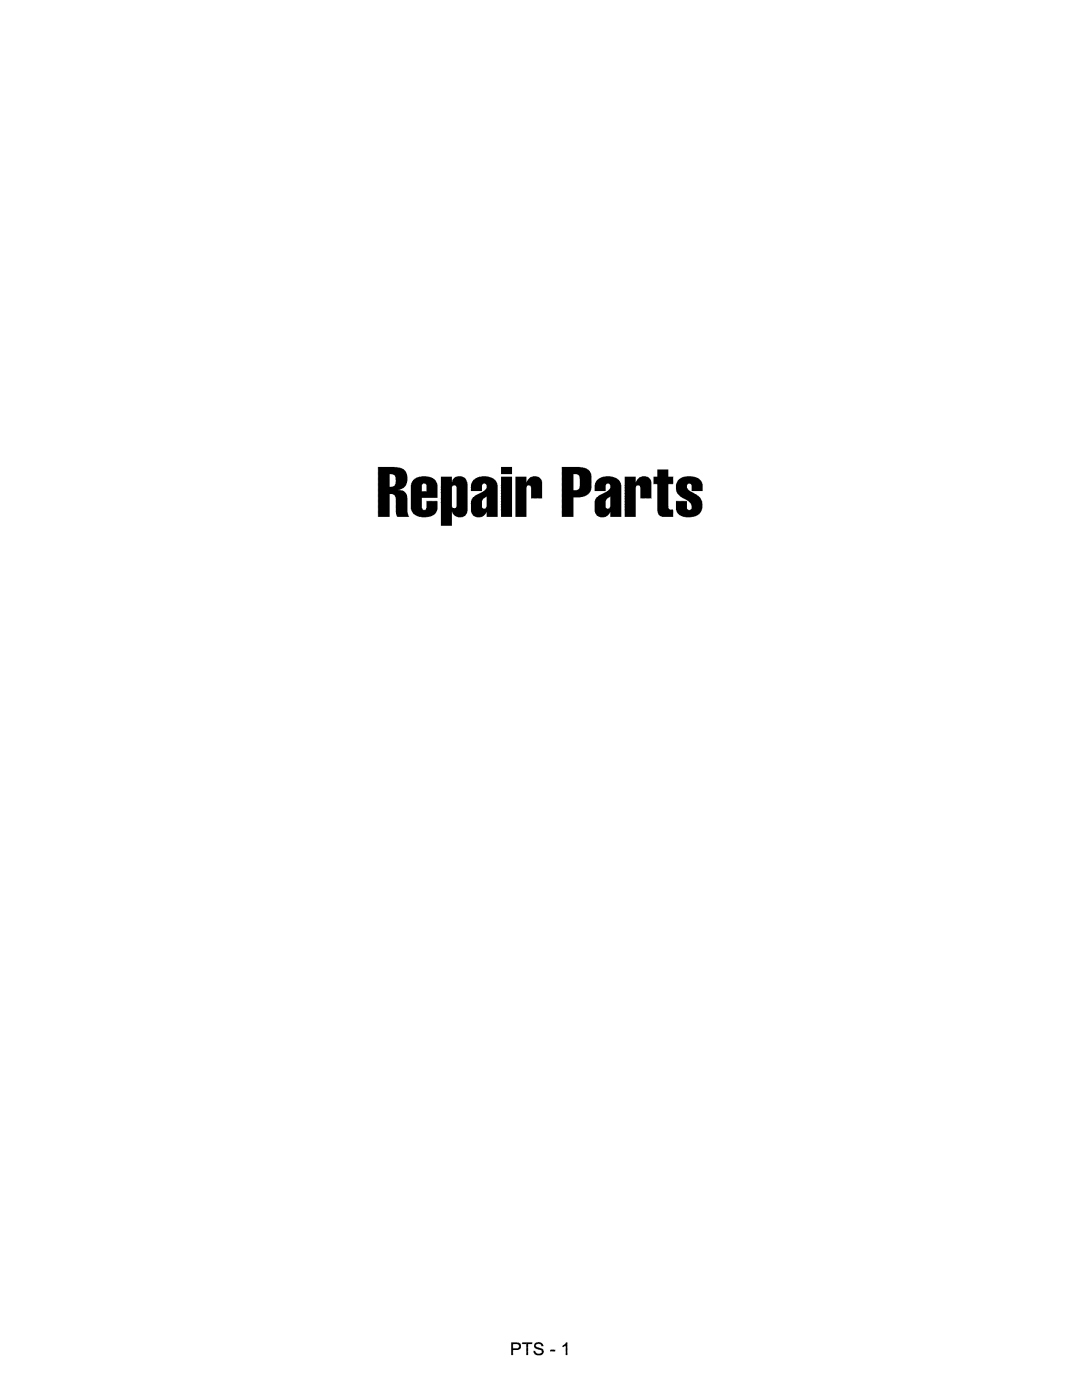 Craftsman 107.289860, ZTS 6000 manual RepairParts, Pts 